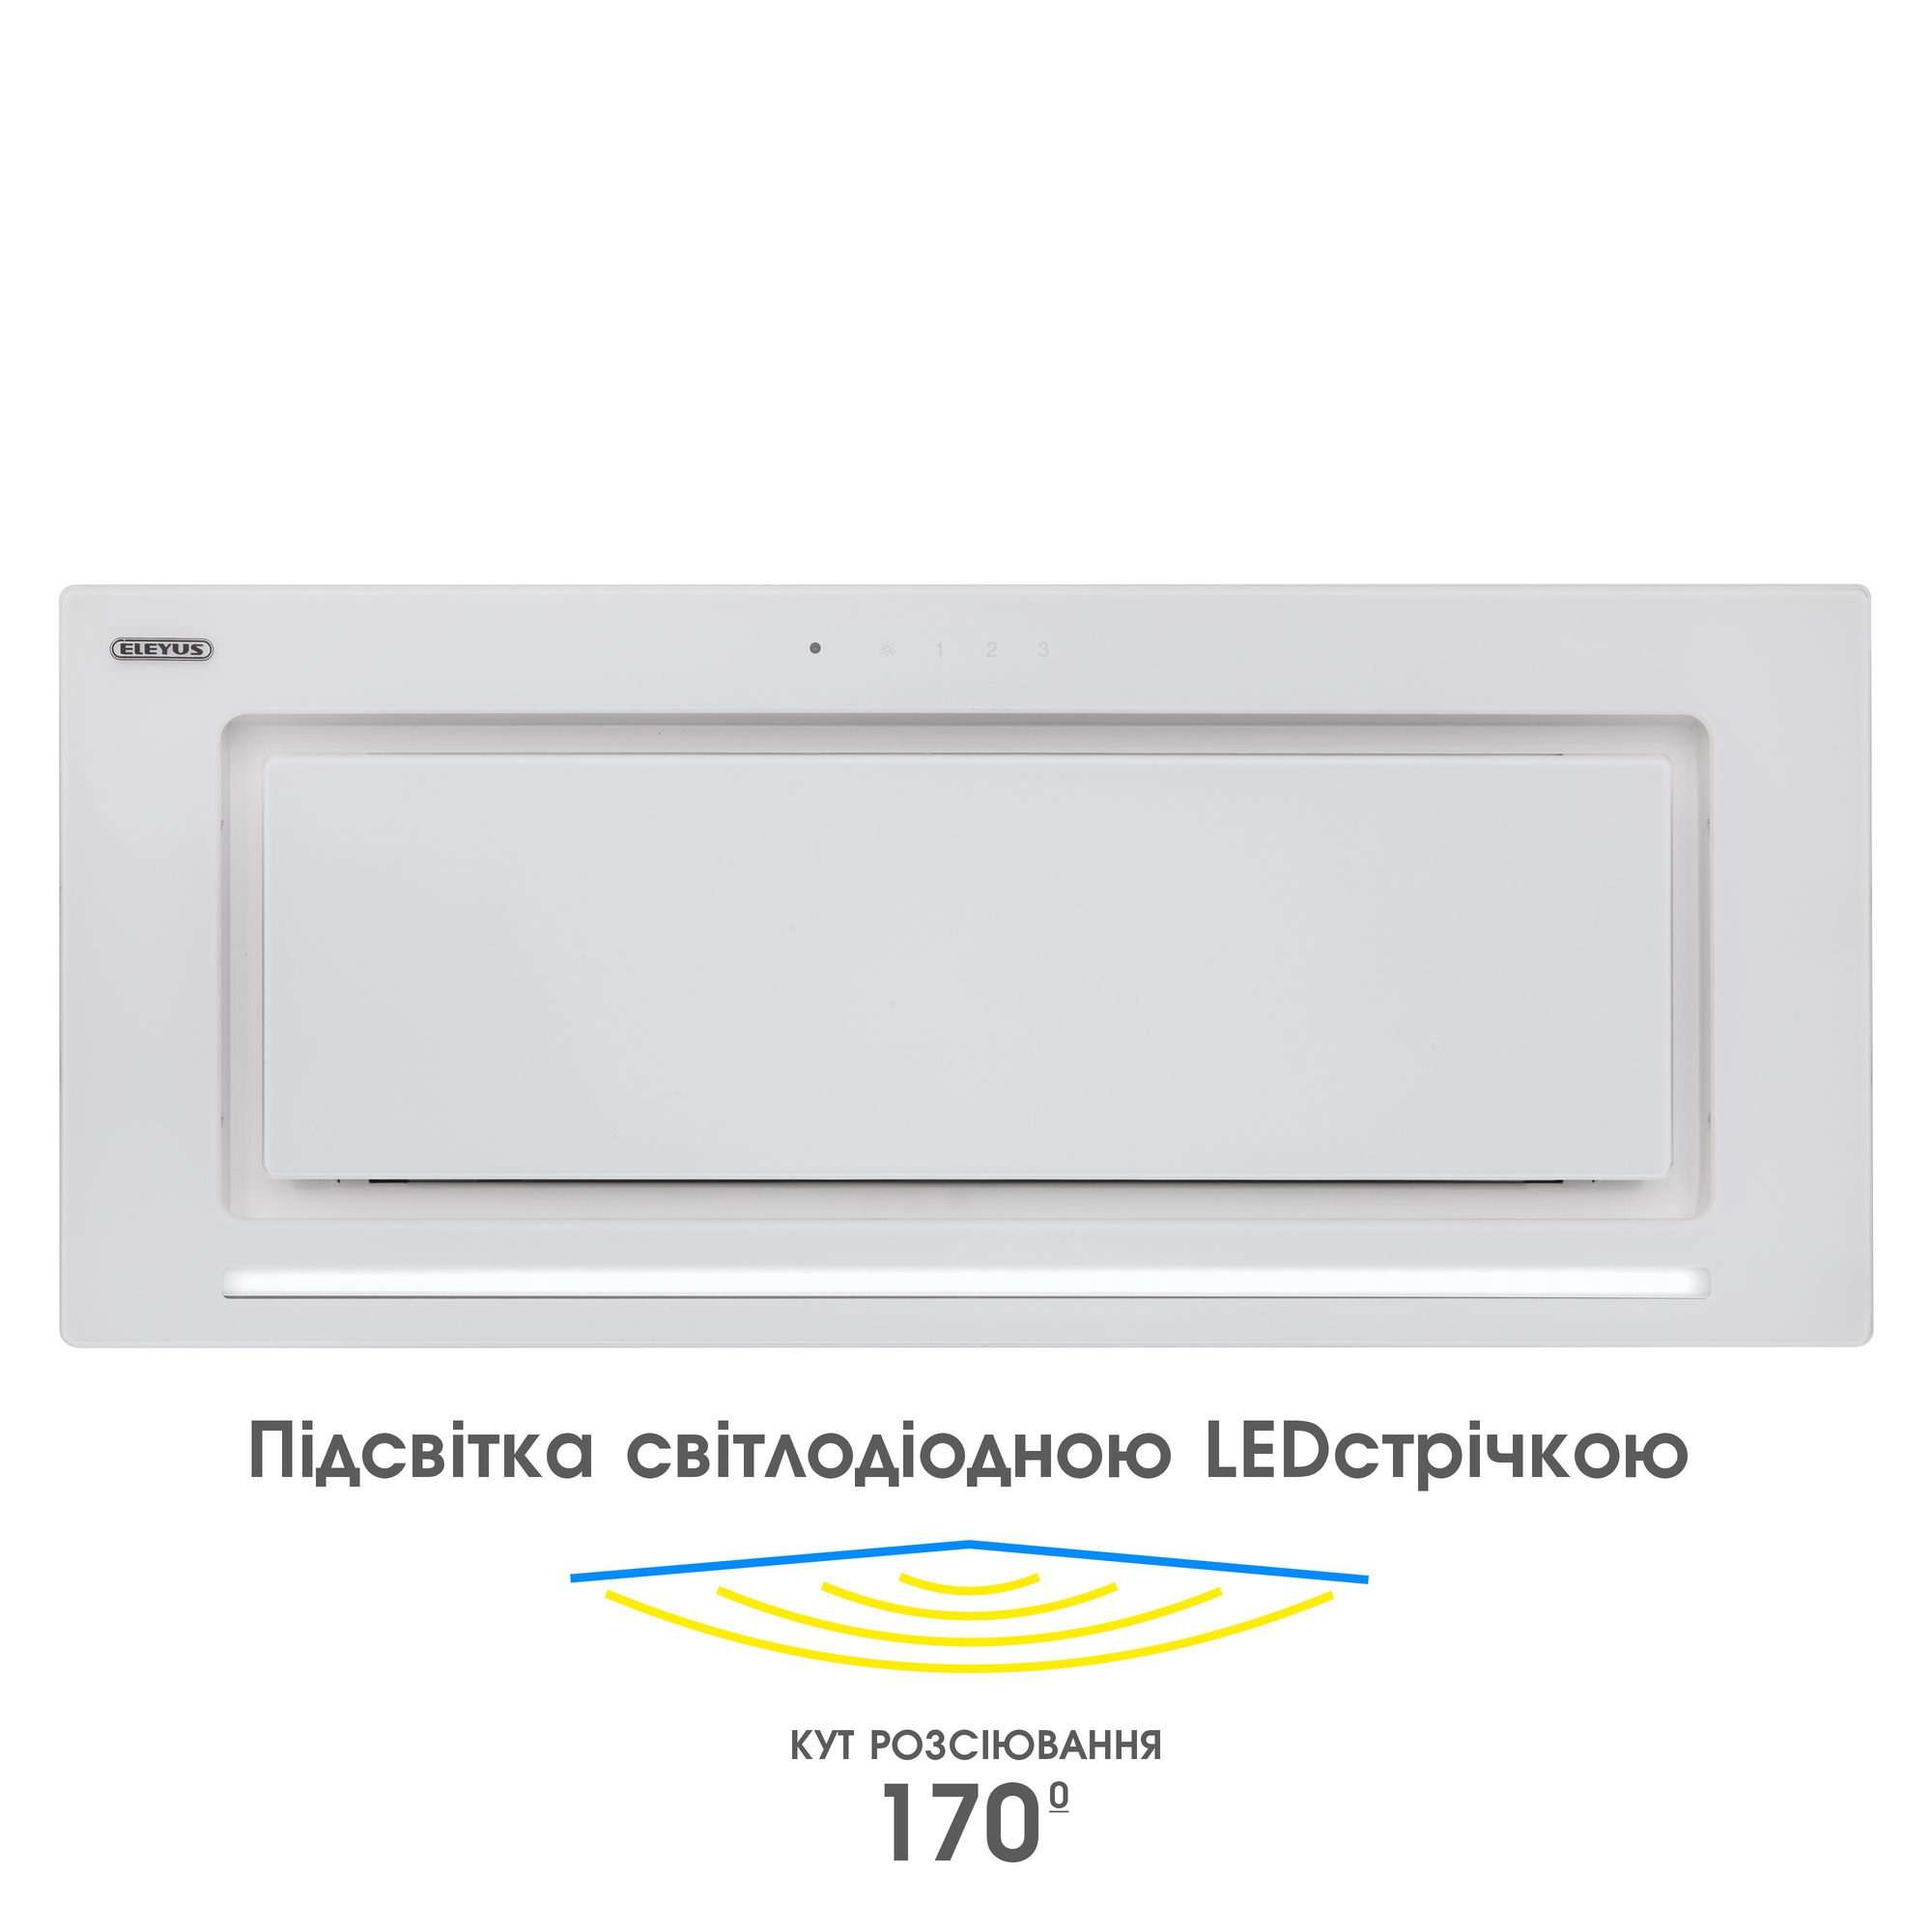 Кухонная вытяжка Eleyus Integra 1200 LED 70 WH инструкция - изображение 6